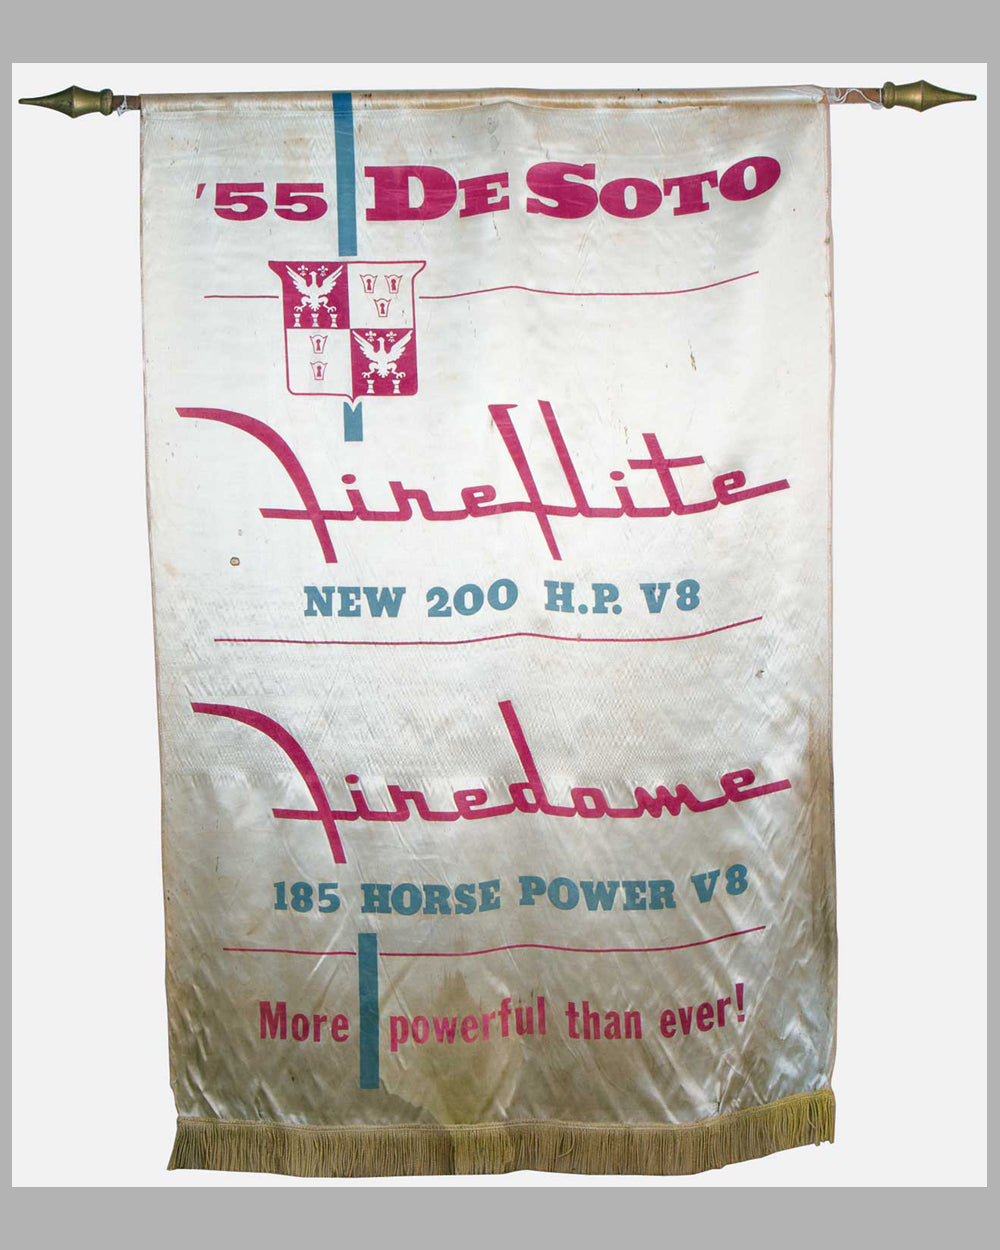 1955 DeSoto dealer showroom banner, USA